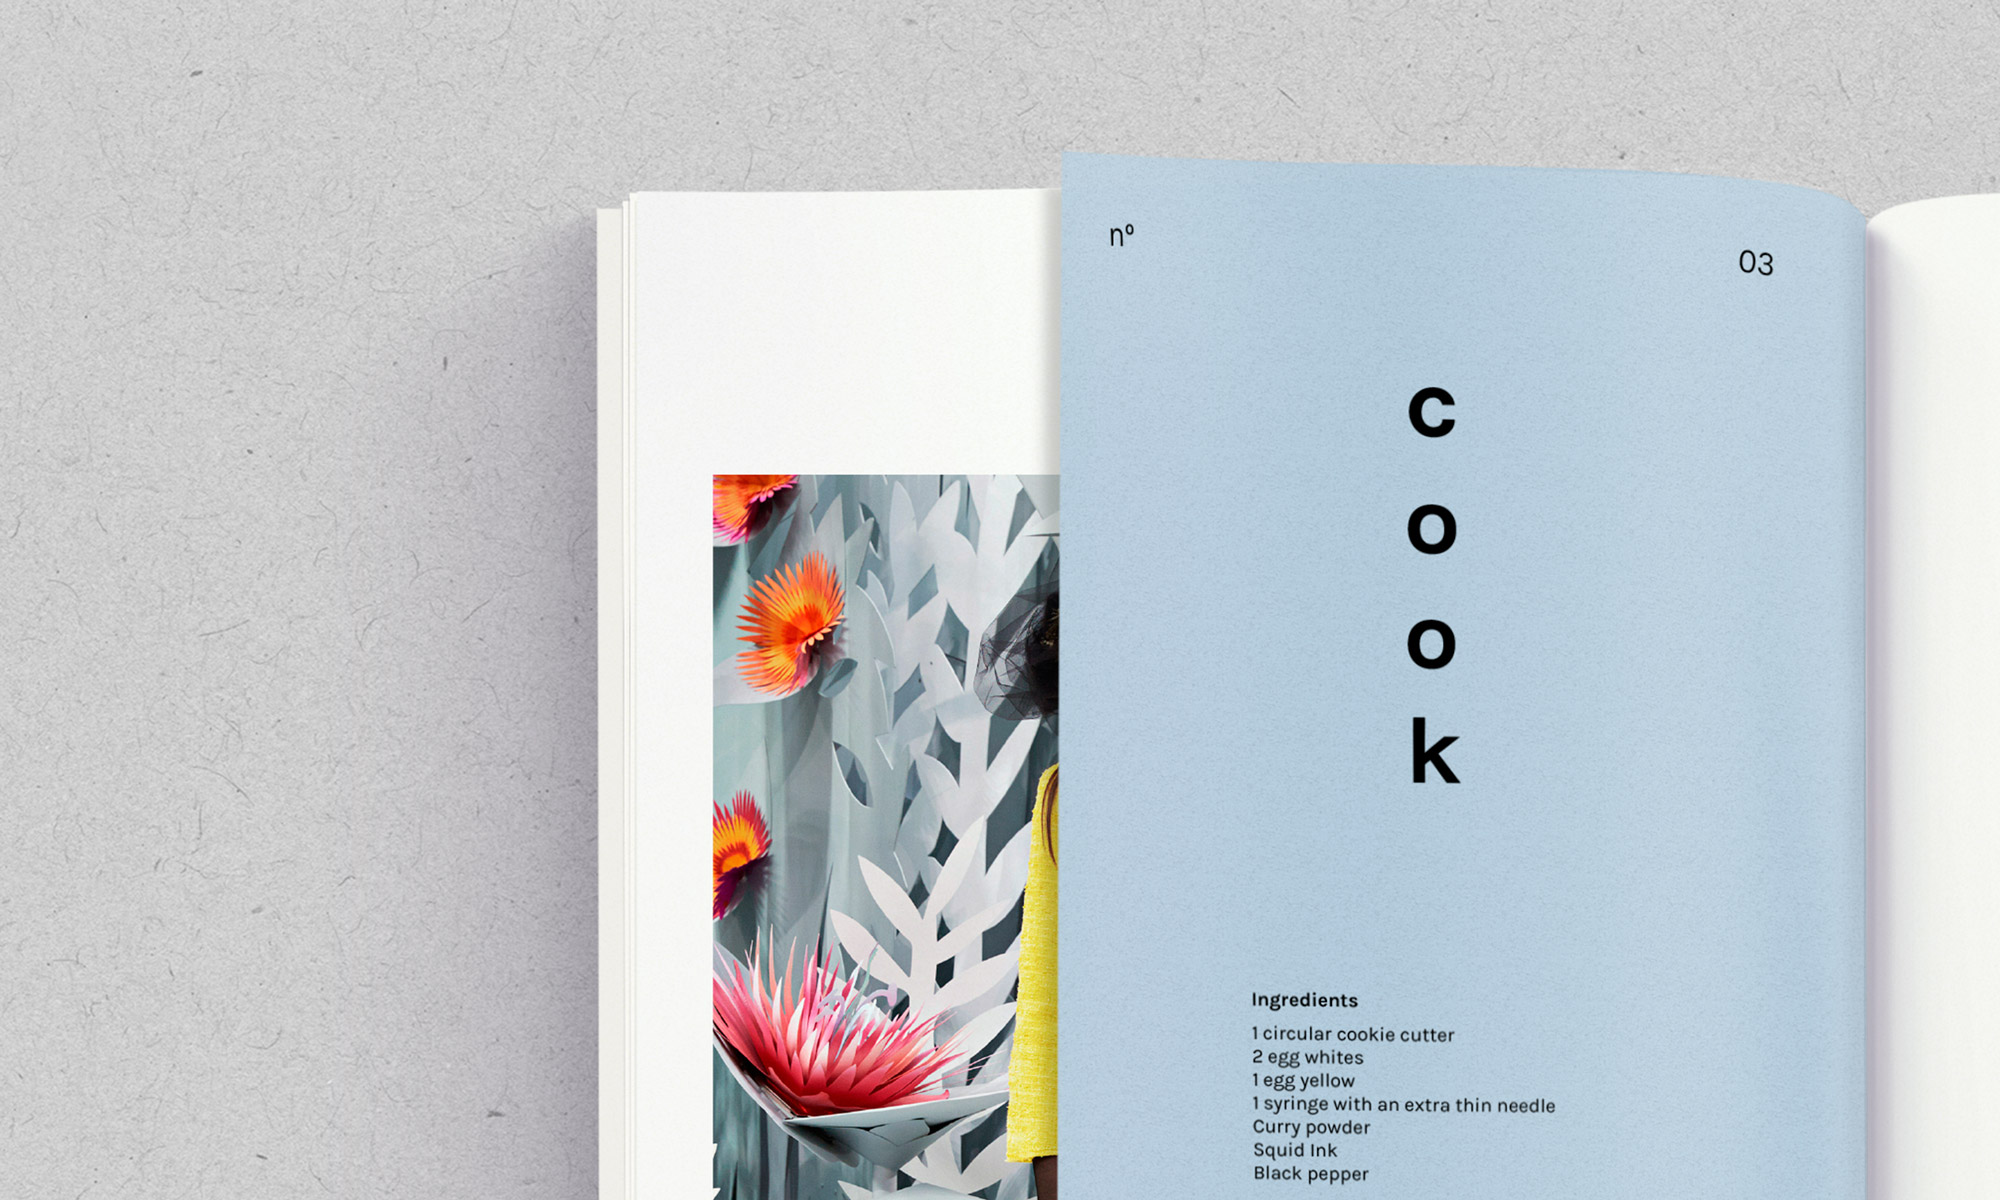 Livre cook look book.
Réalisé par Au-delà studio.
Aloïs Ancenay 